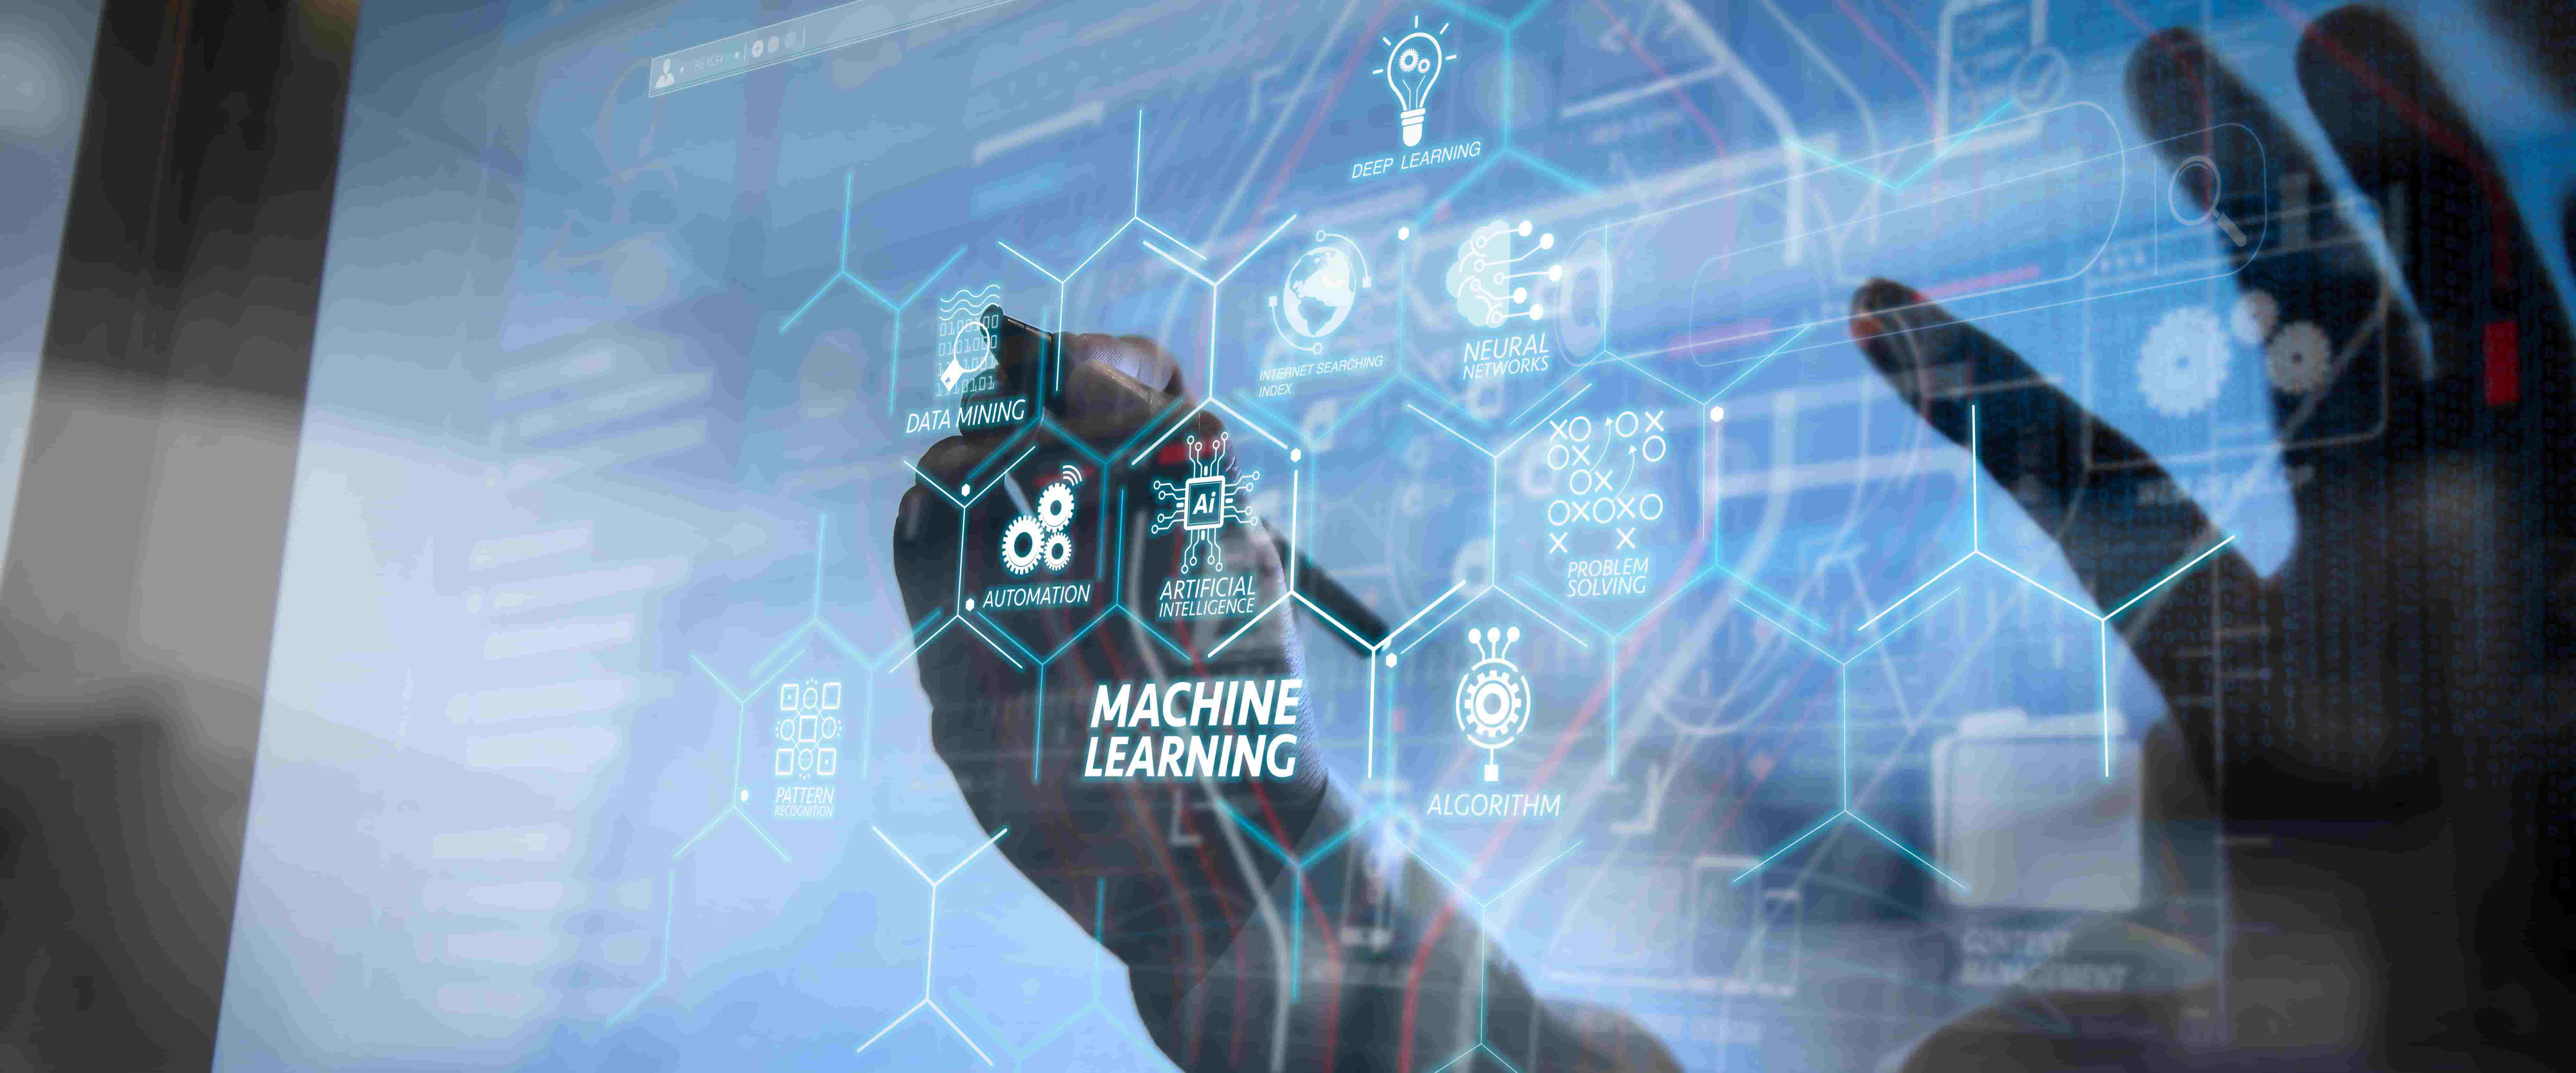 图片展示了一只手在触摸充满数字化图标和英文术语的透明屏幕，中心写着“机器学习”，体现了高科技和人工智能的概念。